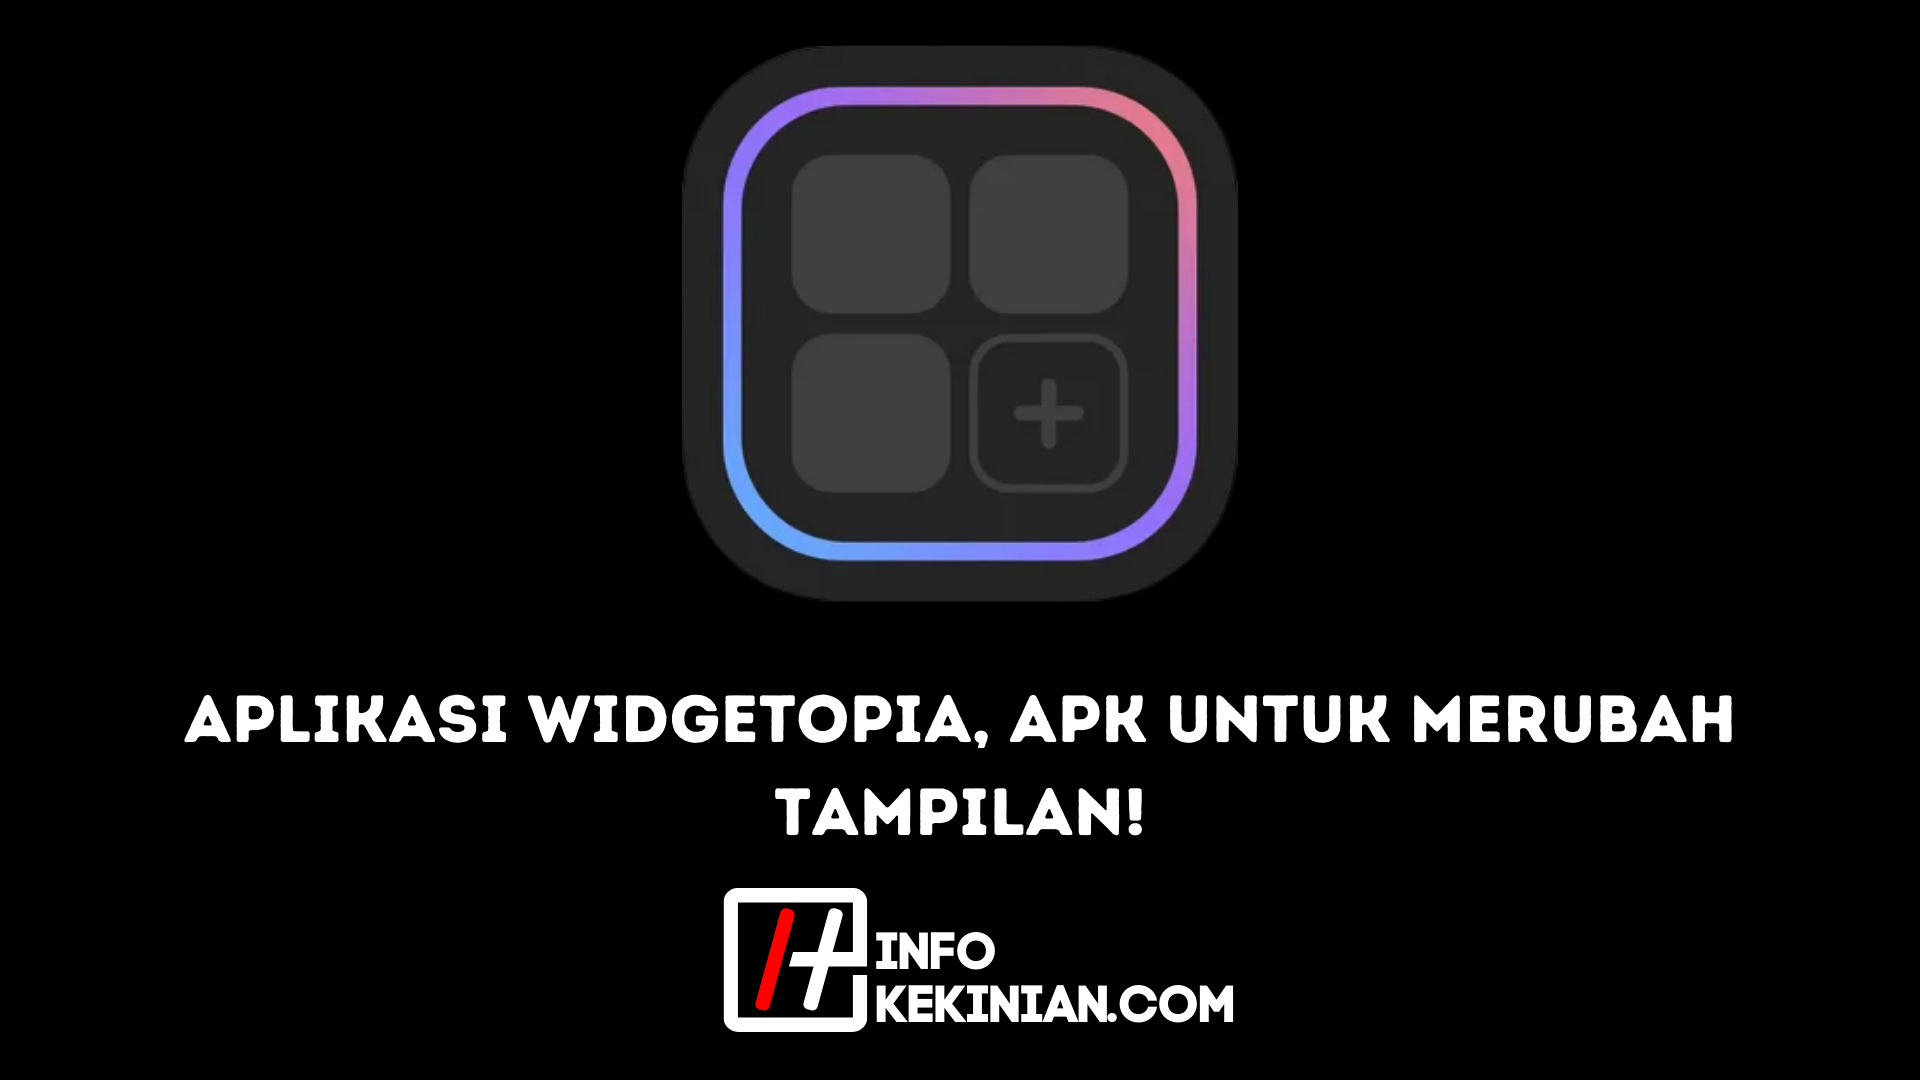 Aplikasi Widgetopia, Apk untuk Merubah Tampilan!